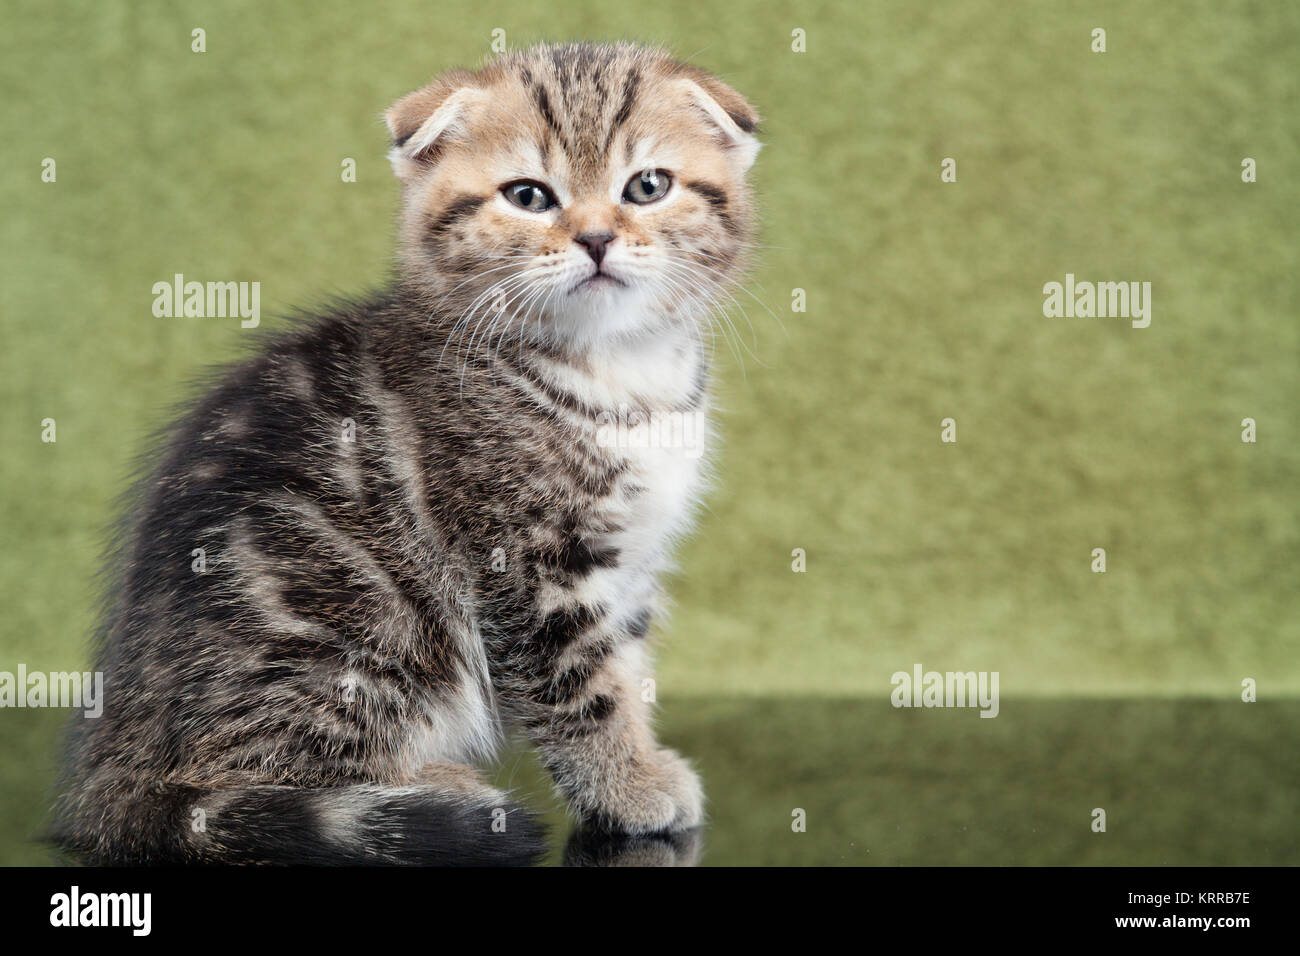 Little scottish kitten on green background Stock Photo